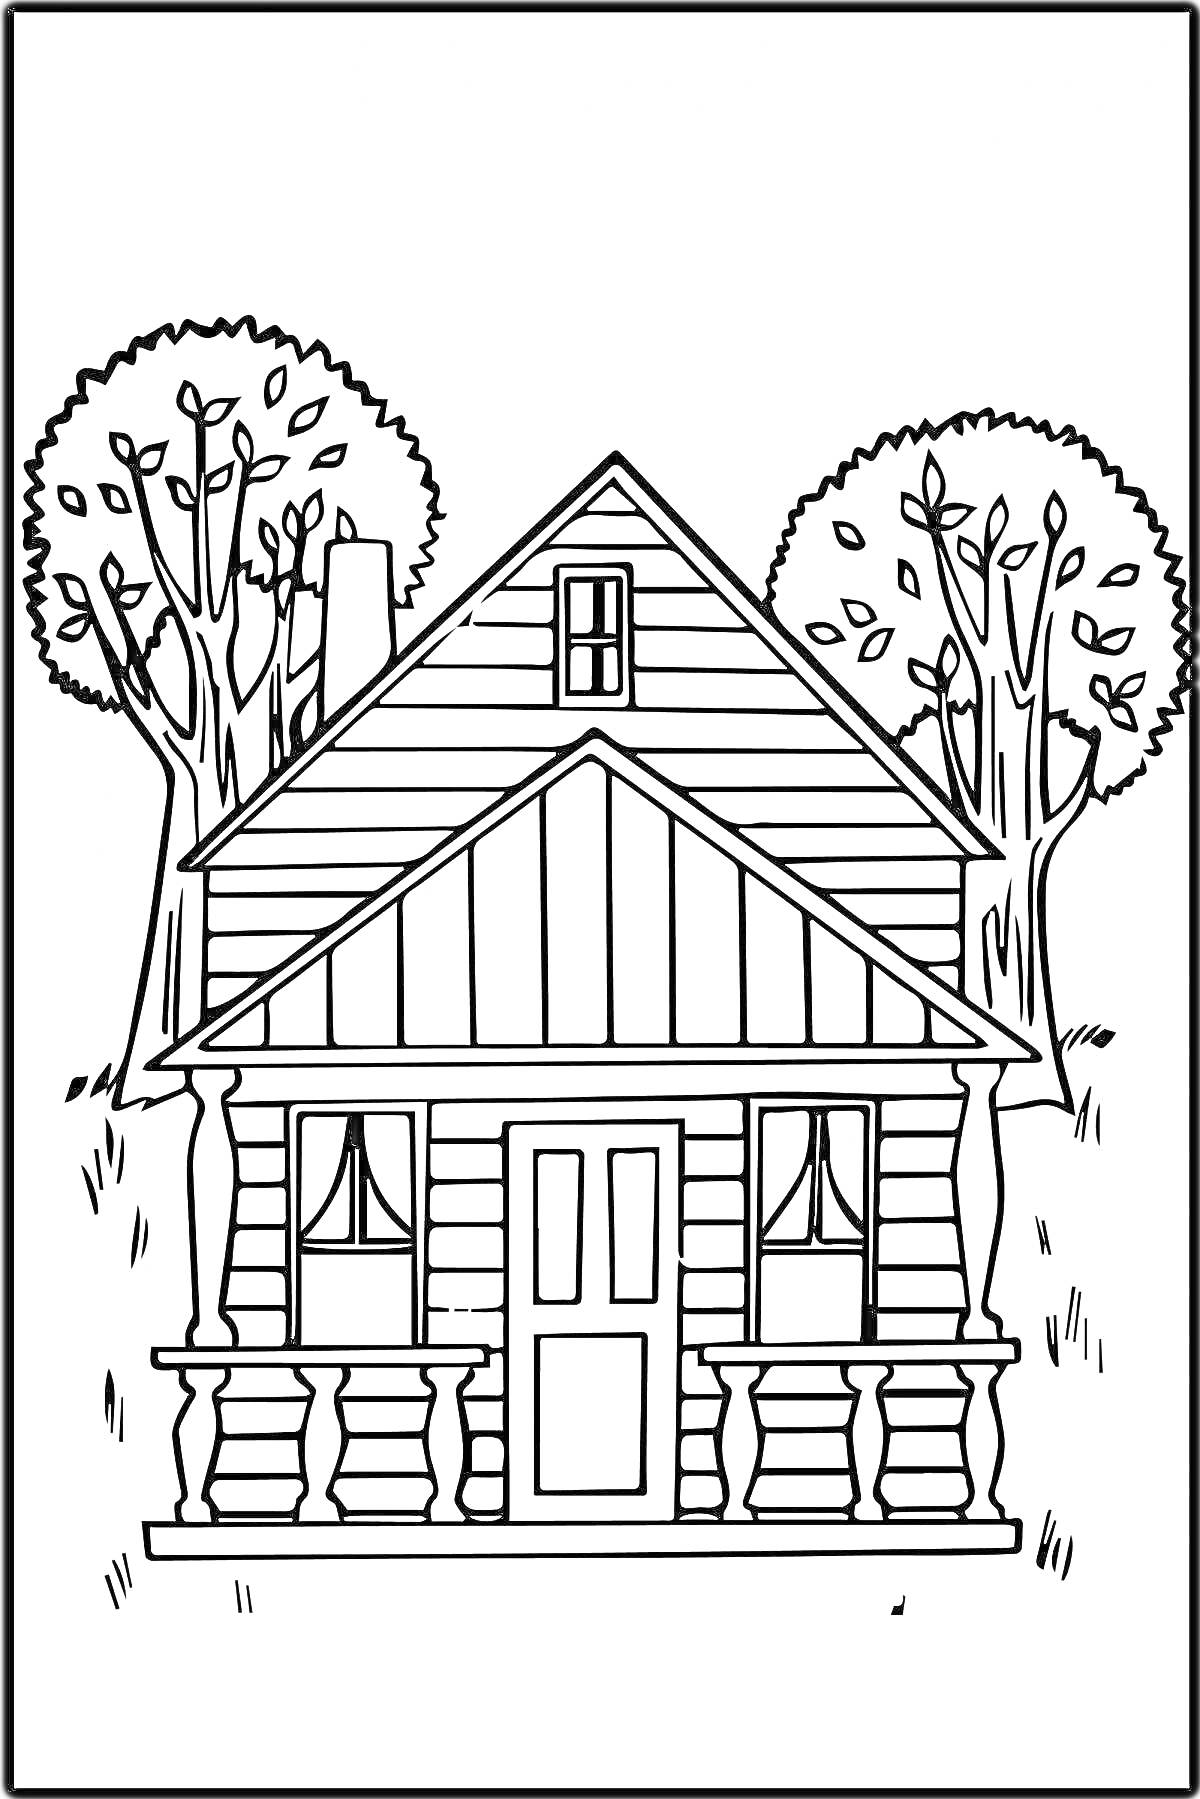 Раскраска Деревенский дом с крыльцом и окнами, обрамленный двумя деревьями